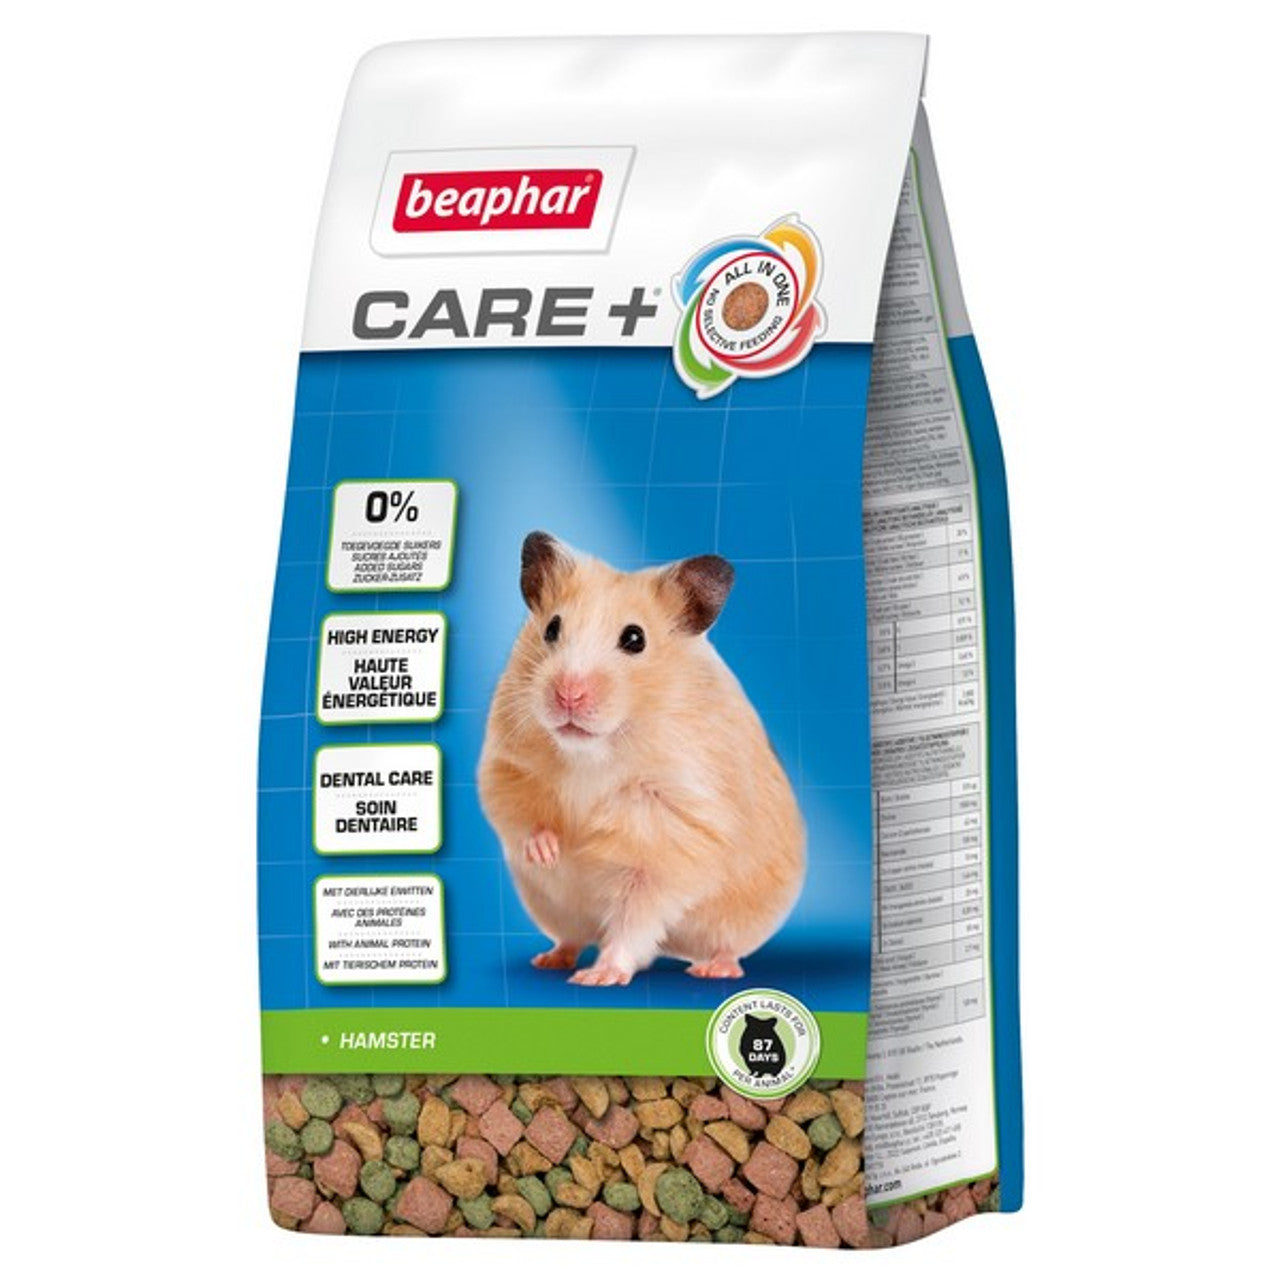 Beaphar Care Plus Hamster 700g